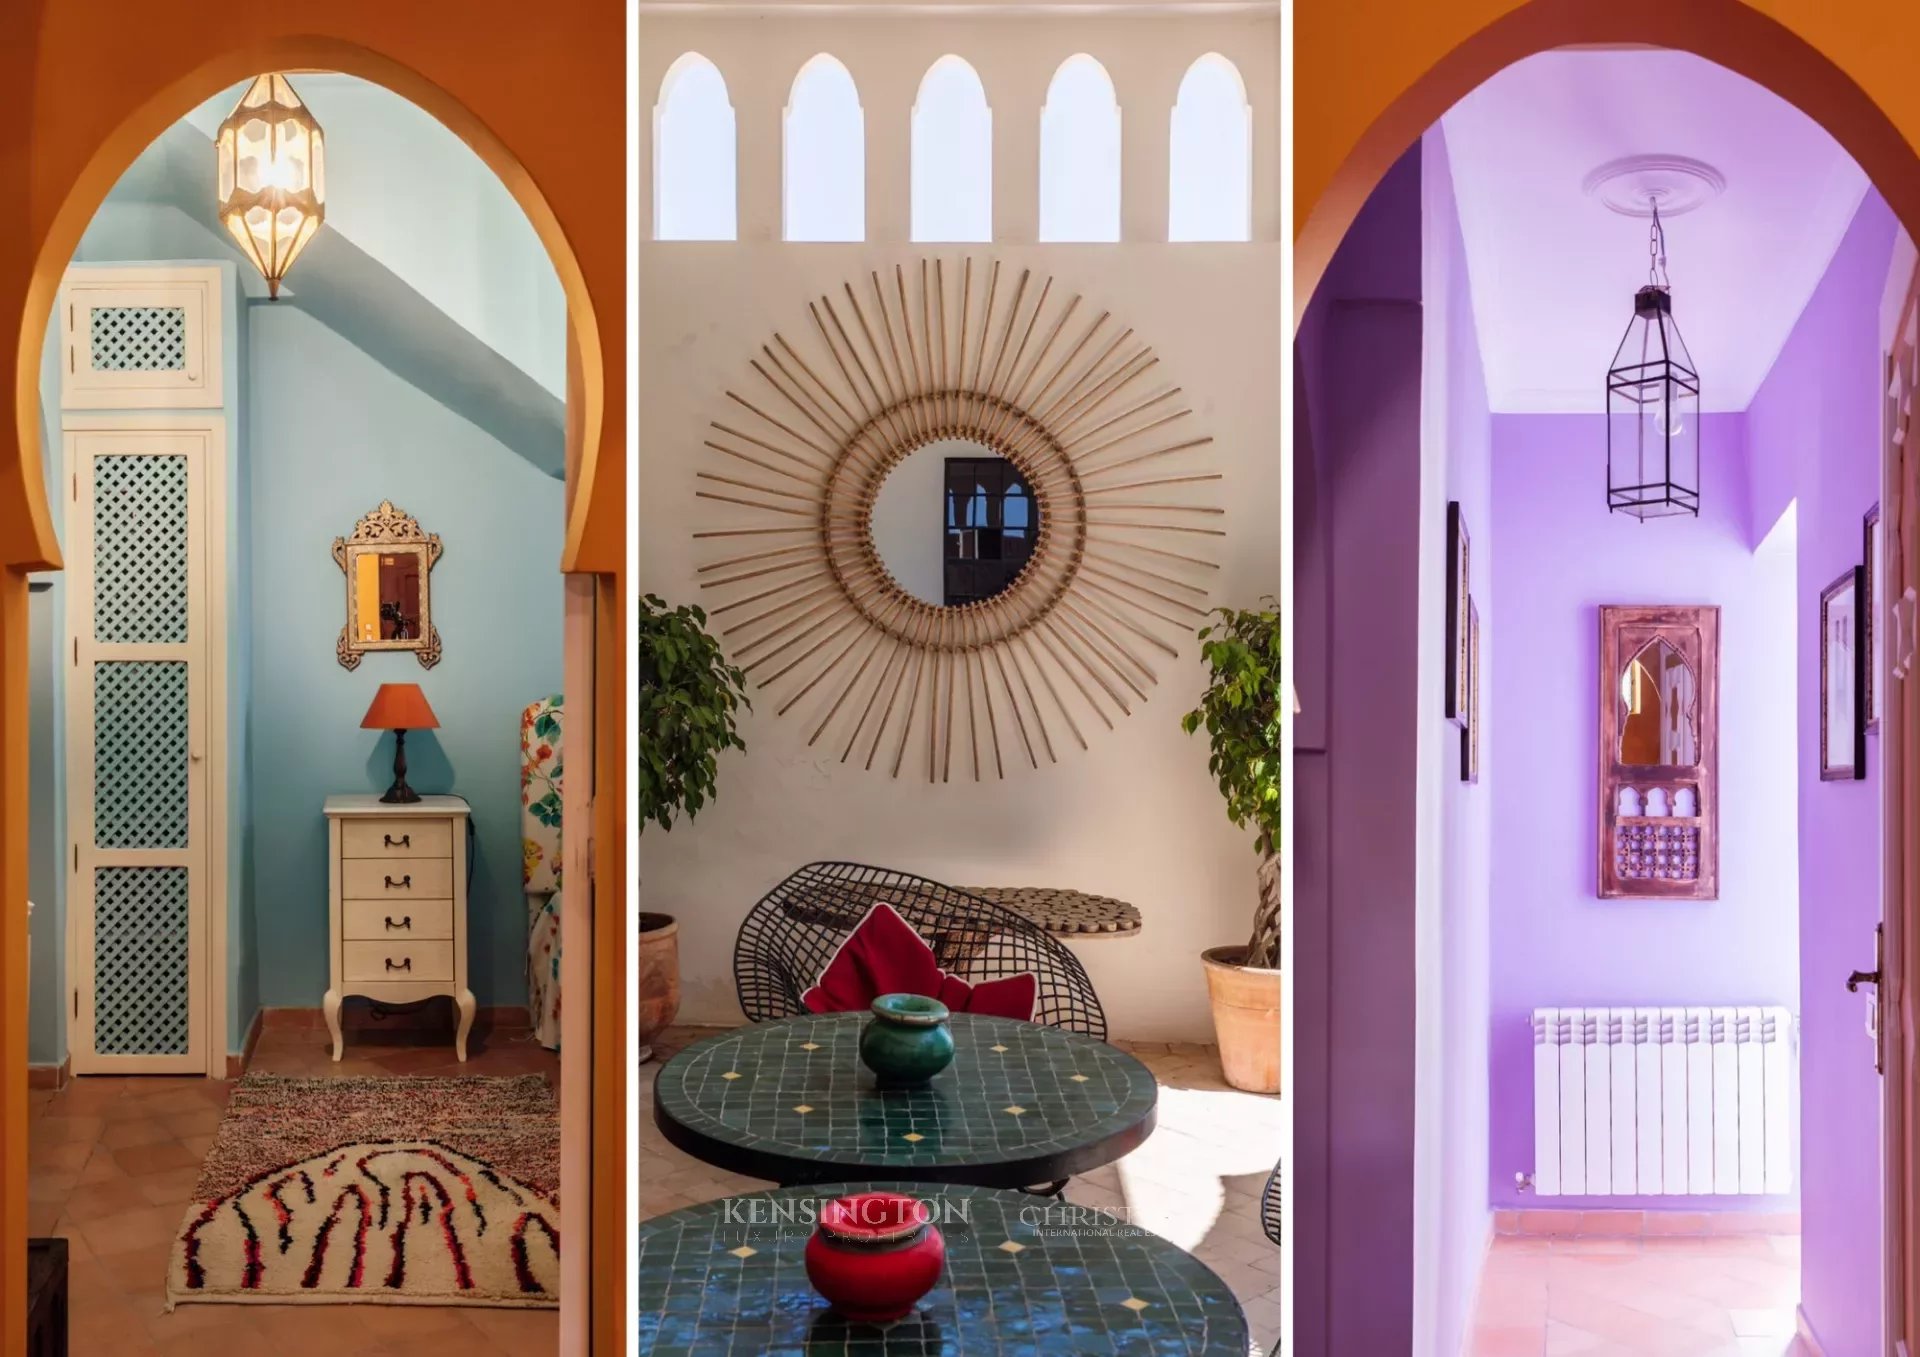 Casa Florida in Tangier, Morocco